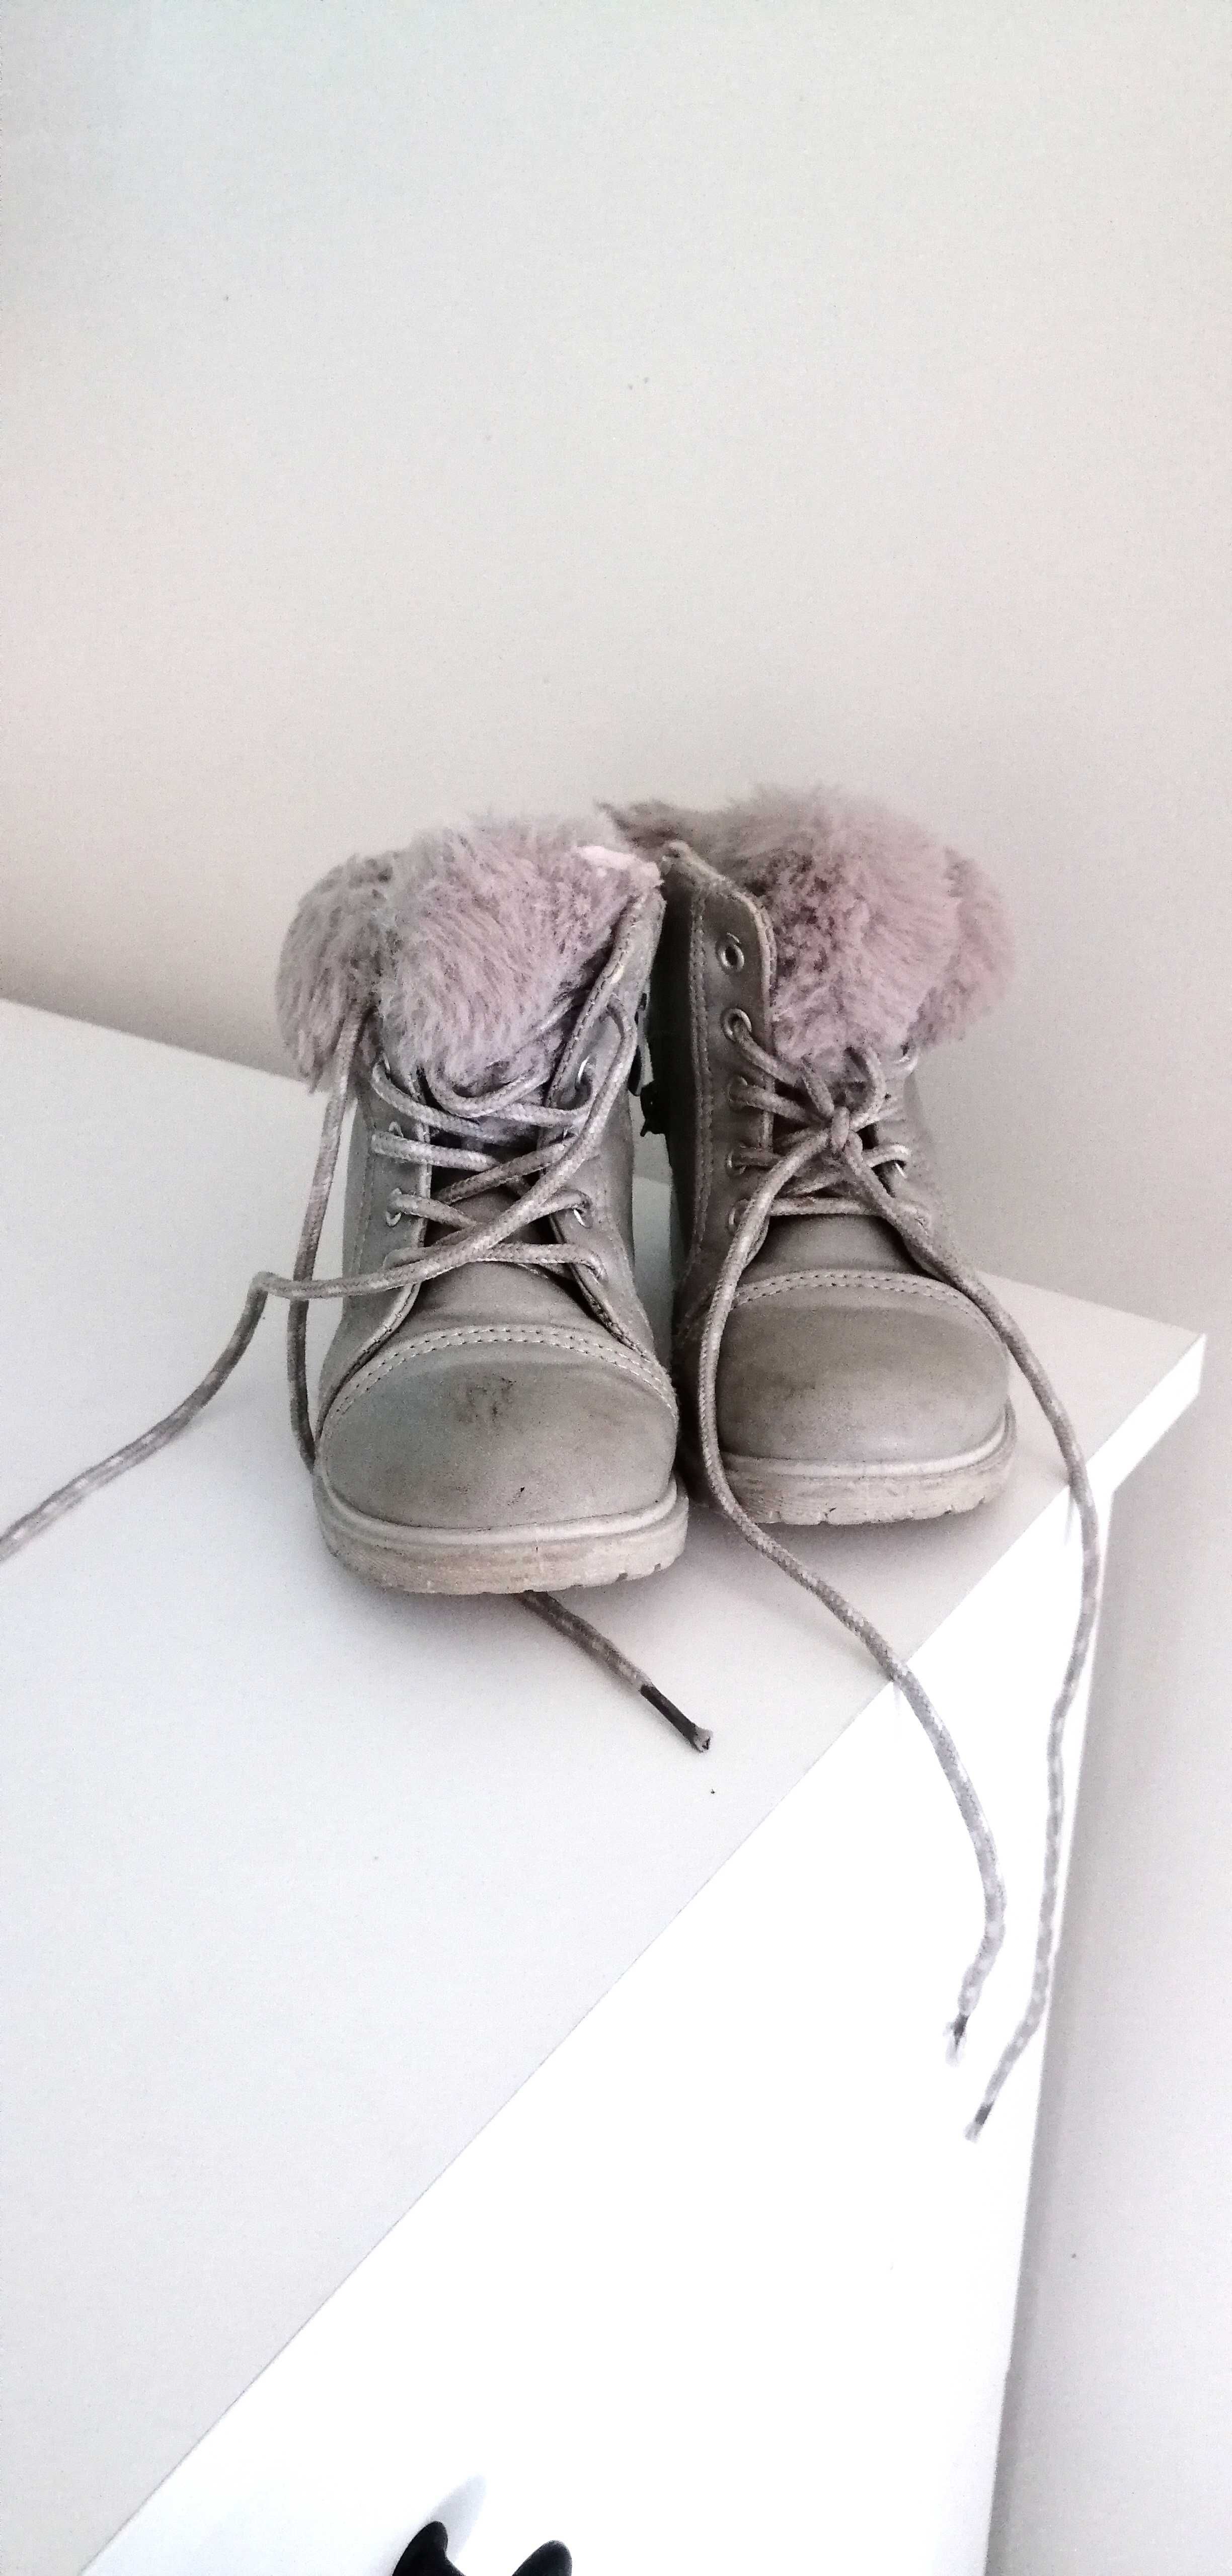 zimowe buciki dziecięce buty botki trapery z futerkiem dziewczęce 27